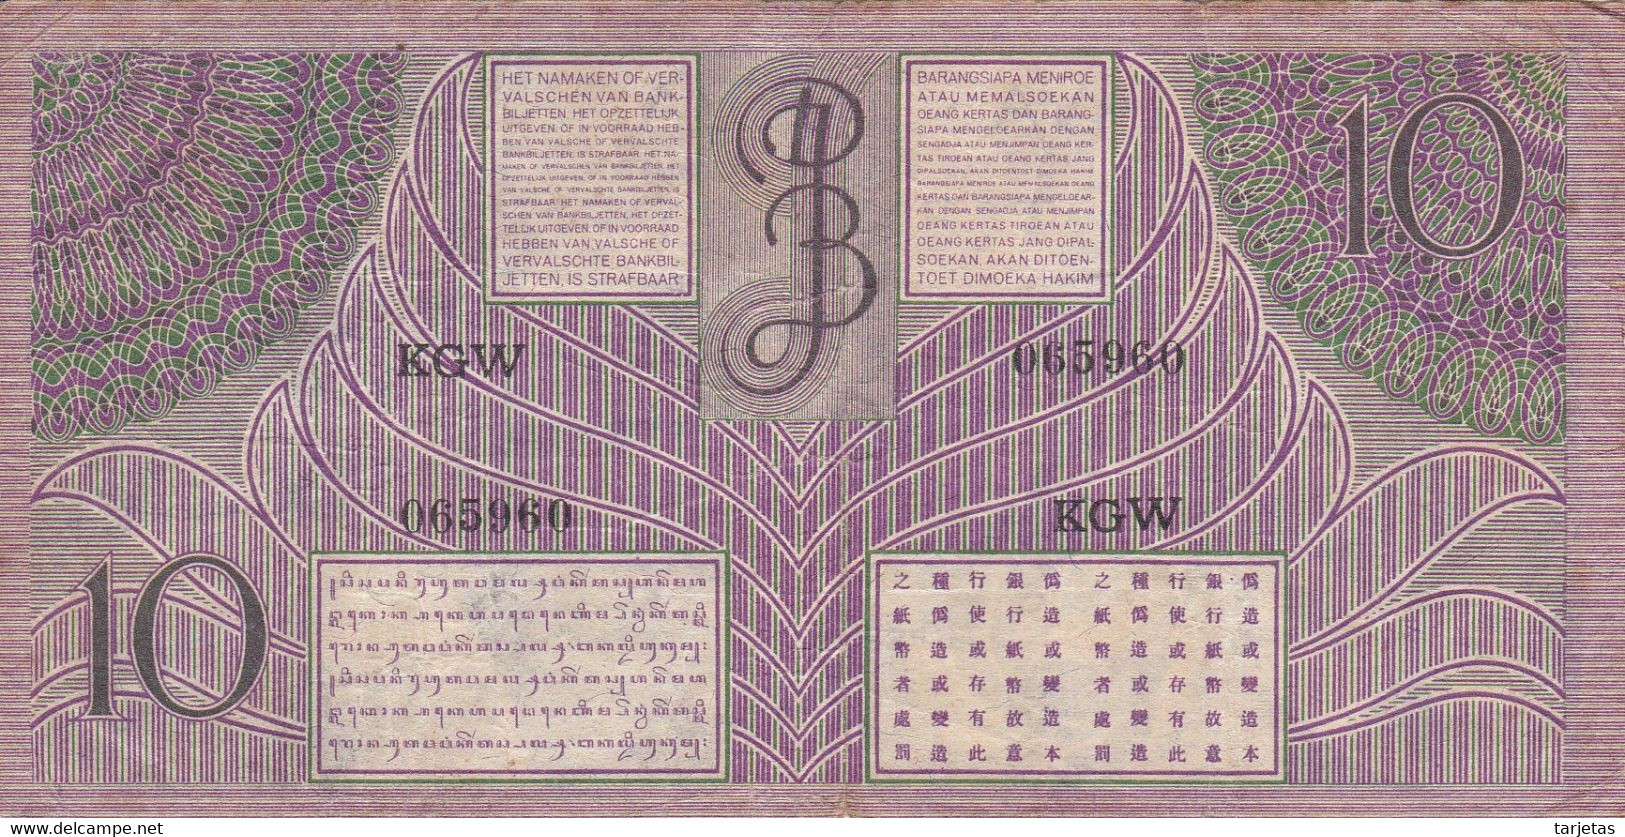 BILLETE DE INDES NEERLANDESAS DE 10 GULDEN DEL AÑO 1946 (BANKNOTE) JAVASCHE BANK - Indes Neerlandesas